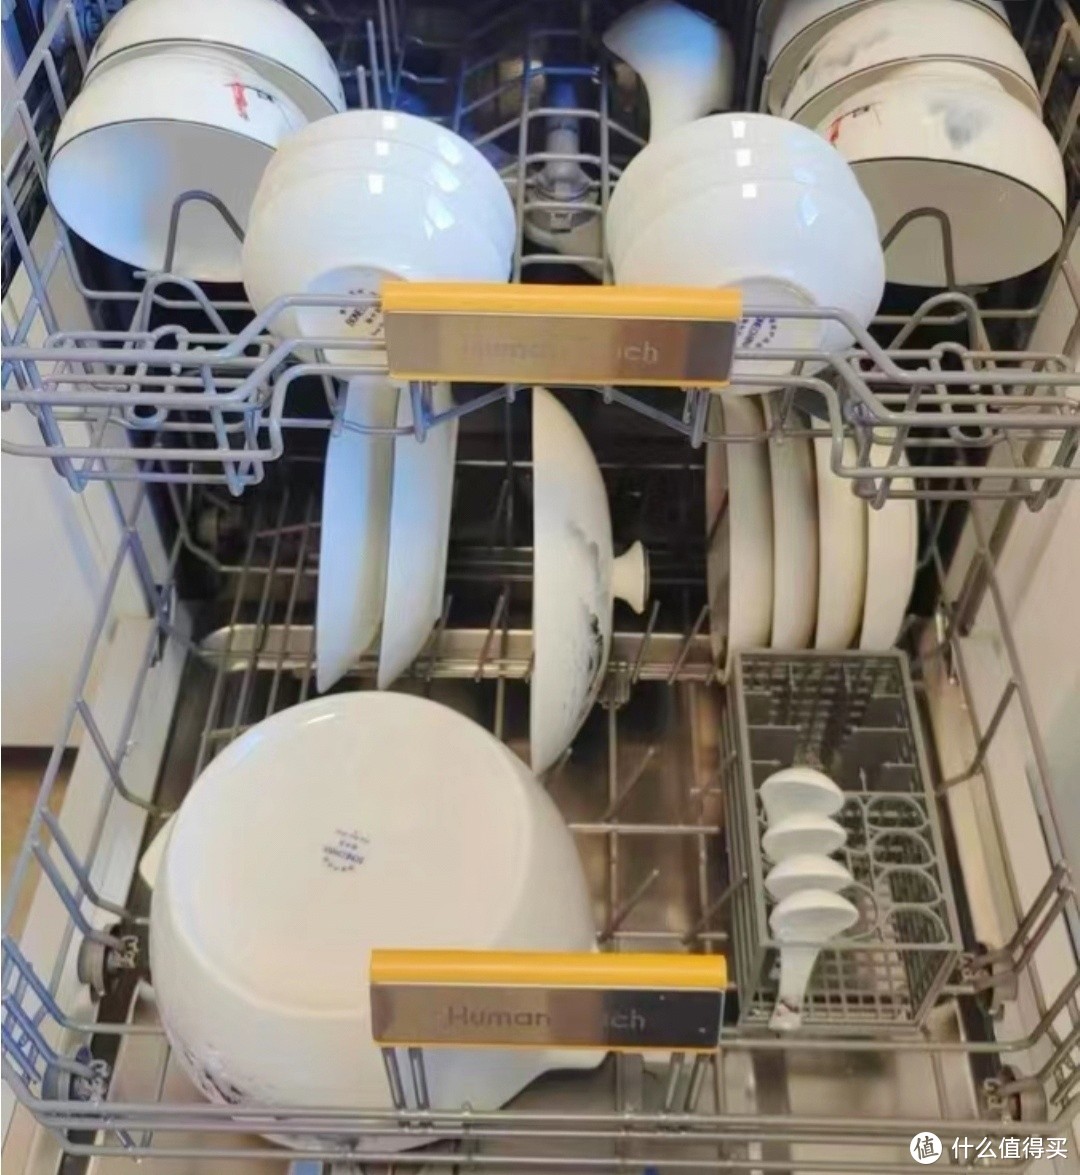 从踩坑到长期使用，洗碗机的使用转变可真难啊。